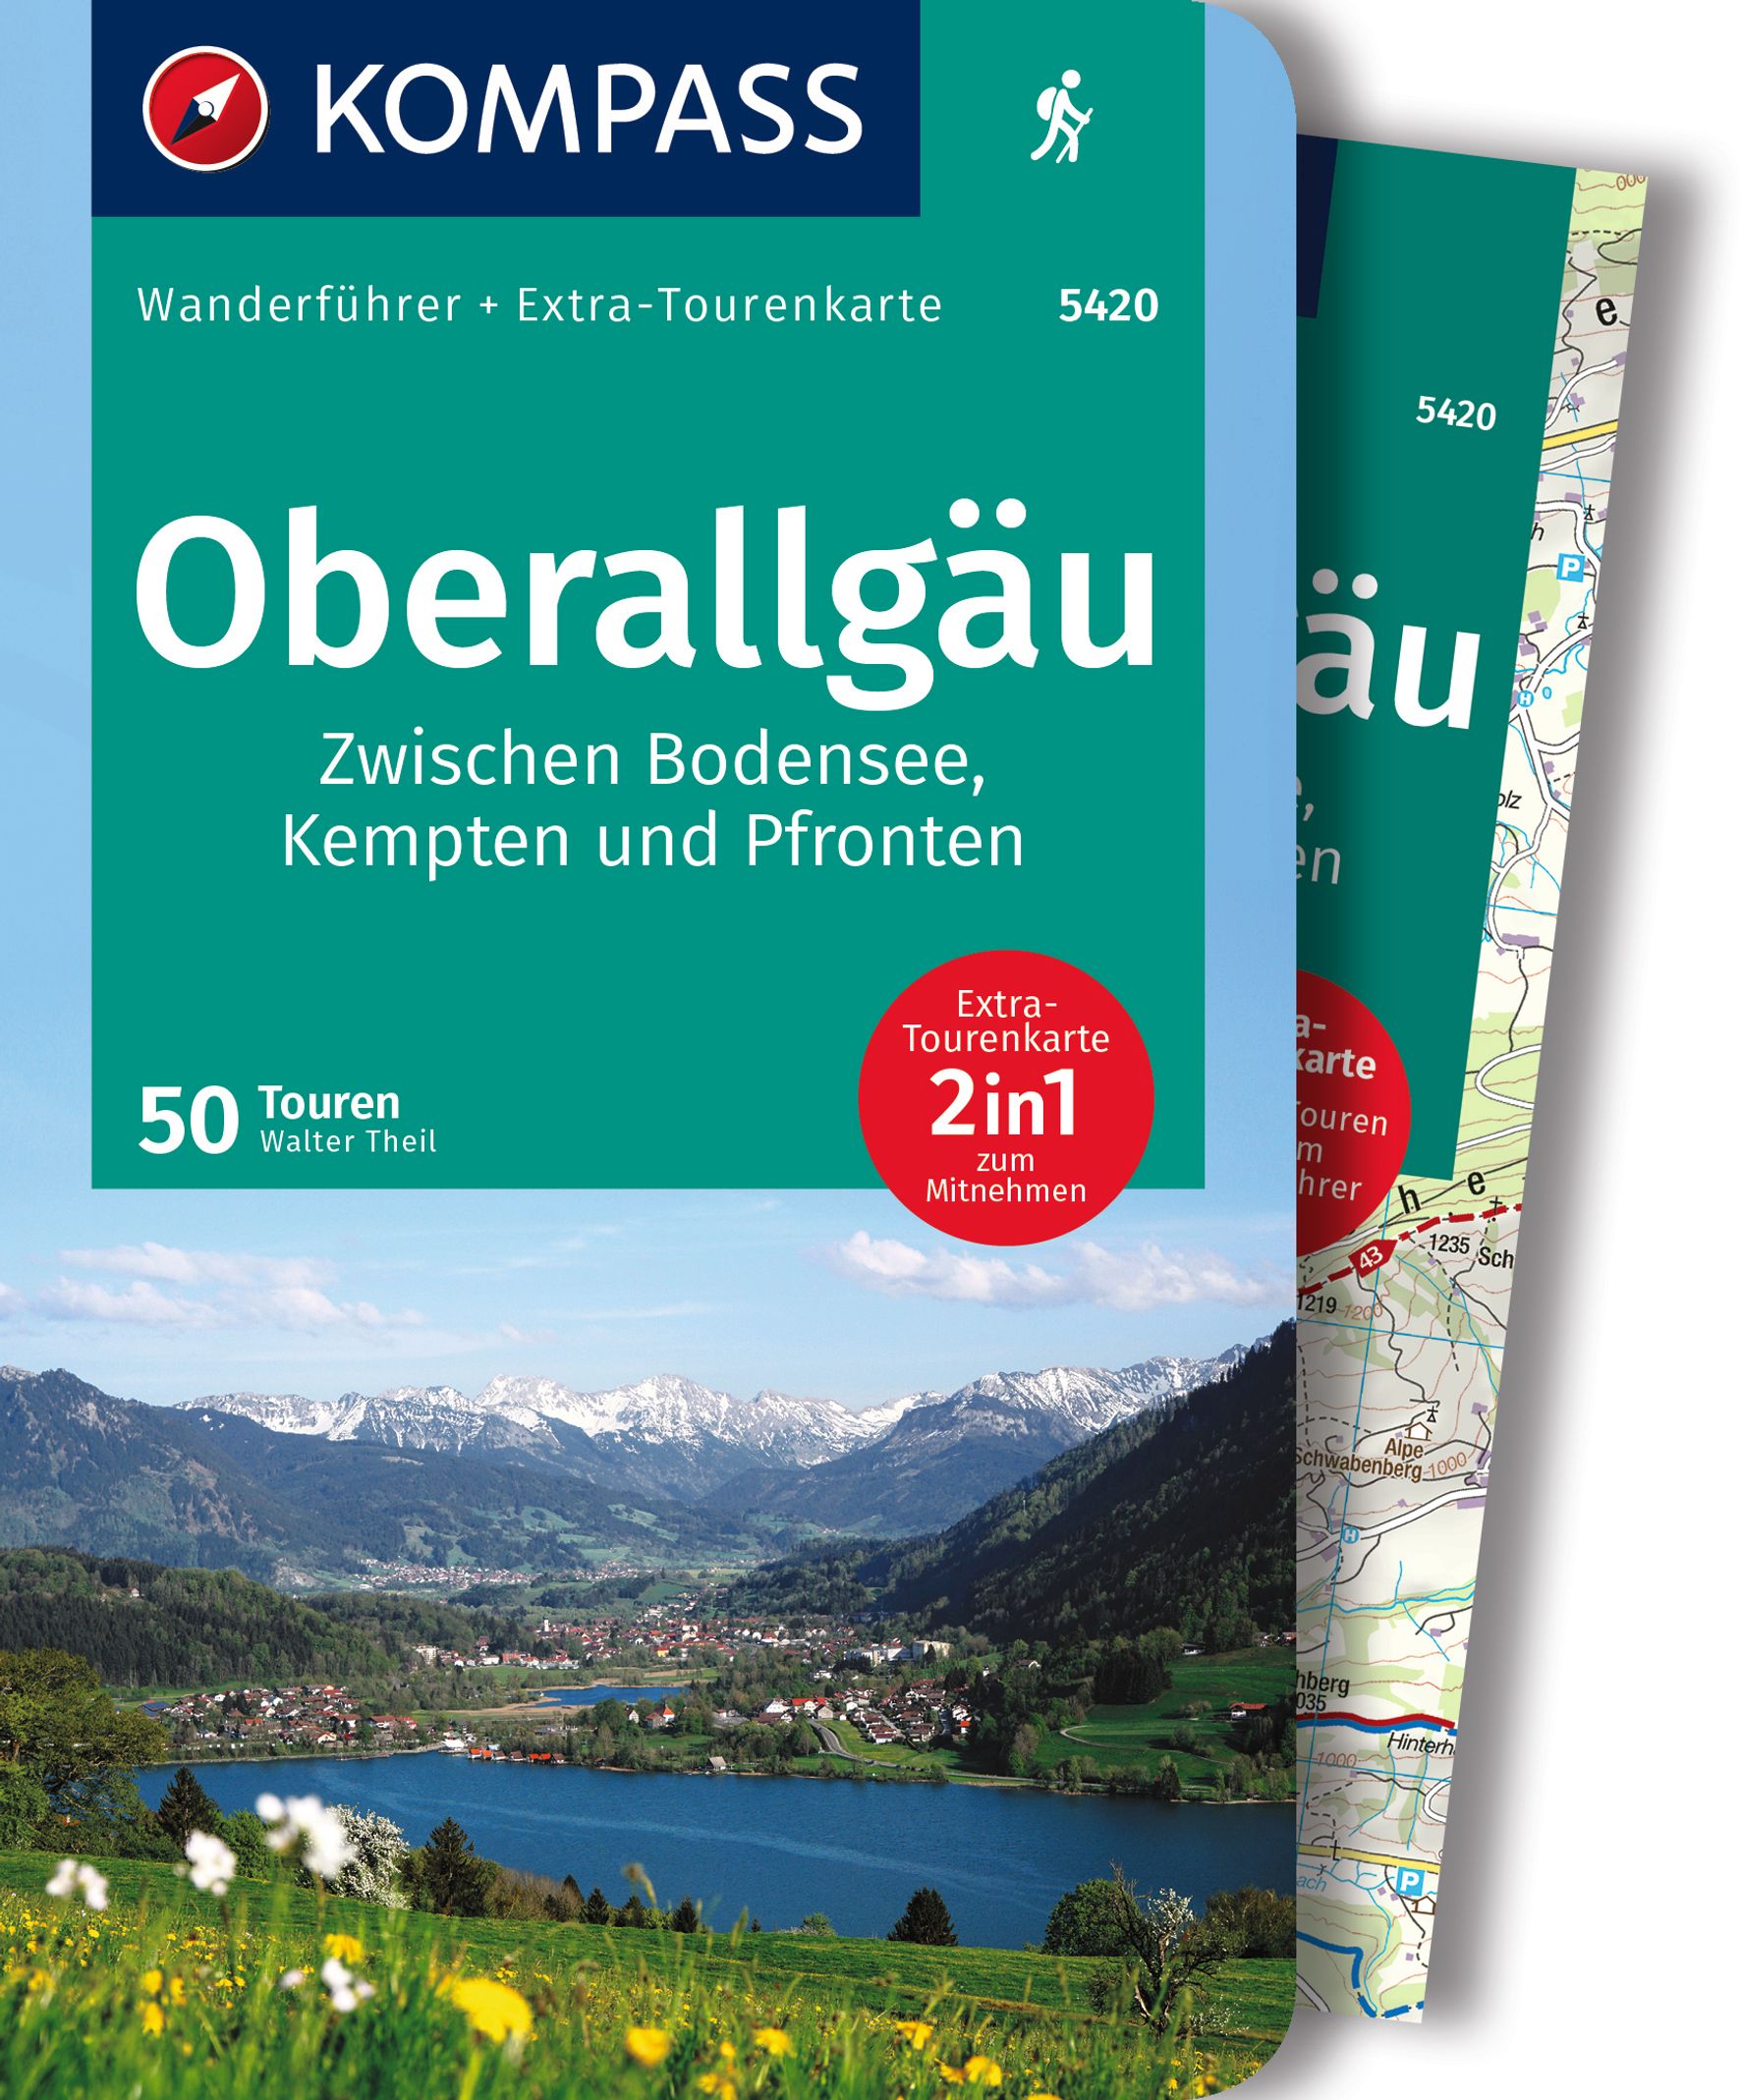 MAIRDUMONT Oberallgäu, 50 Touren zwischen Bodensee, Kempten und Pfronten, mit Extra-Tourenkarte